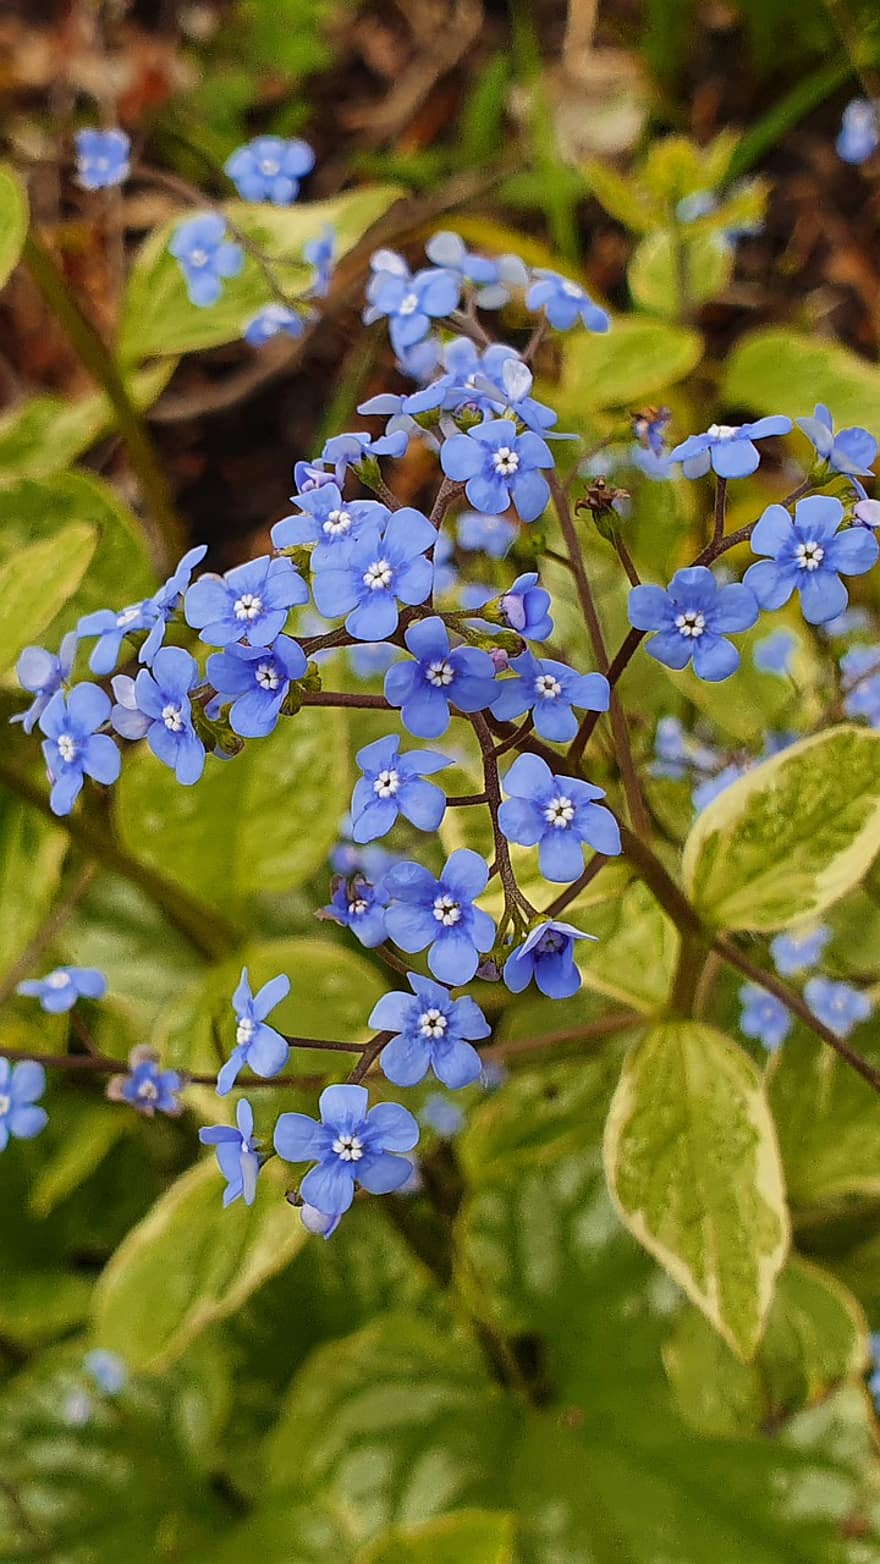 uită-mă poate, albastru, floare, grădină